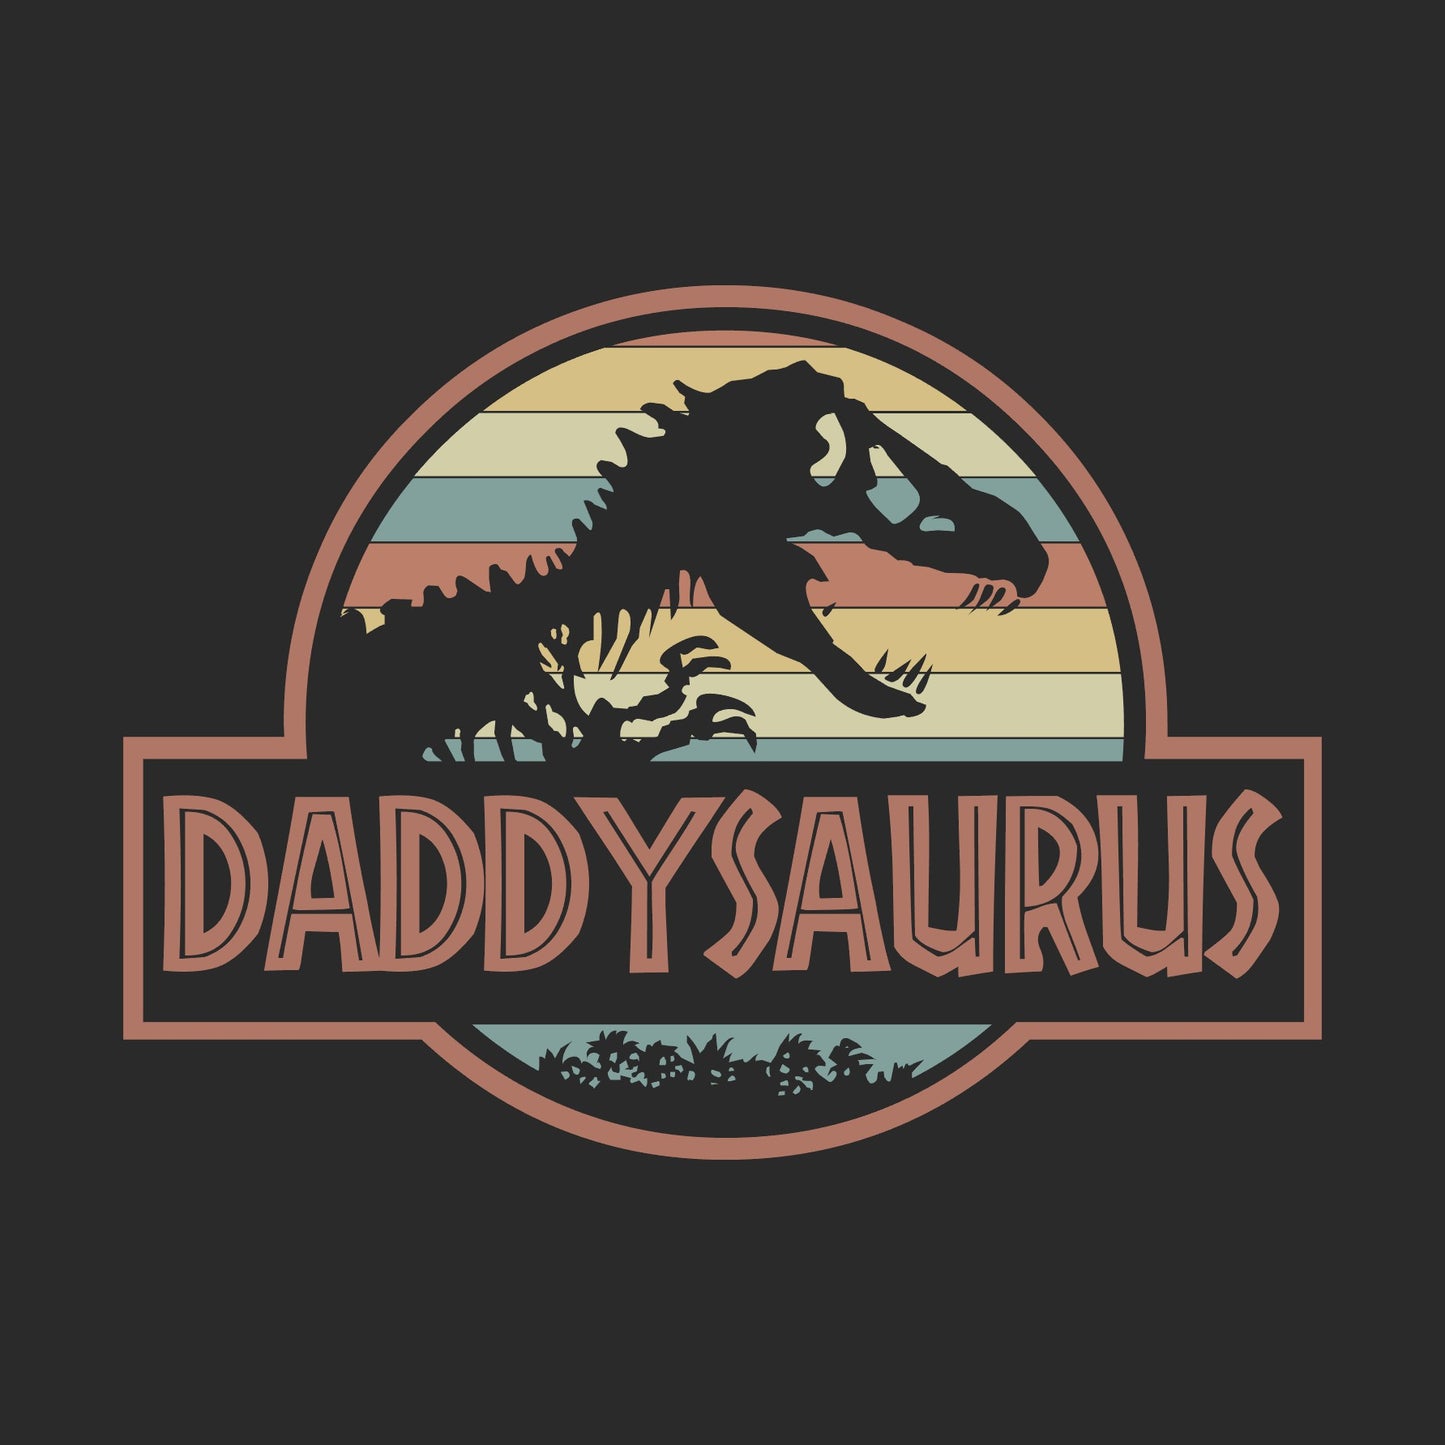 DADDYSAURUS - Apparel for Dad